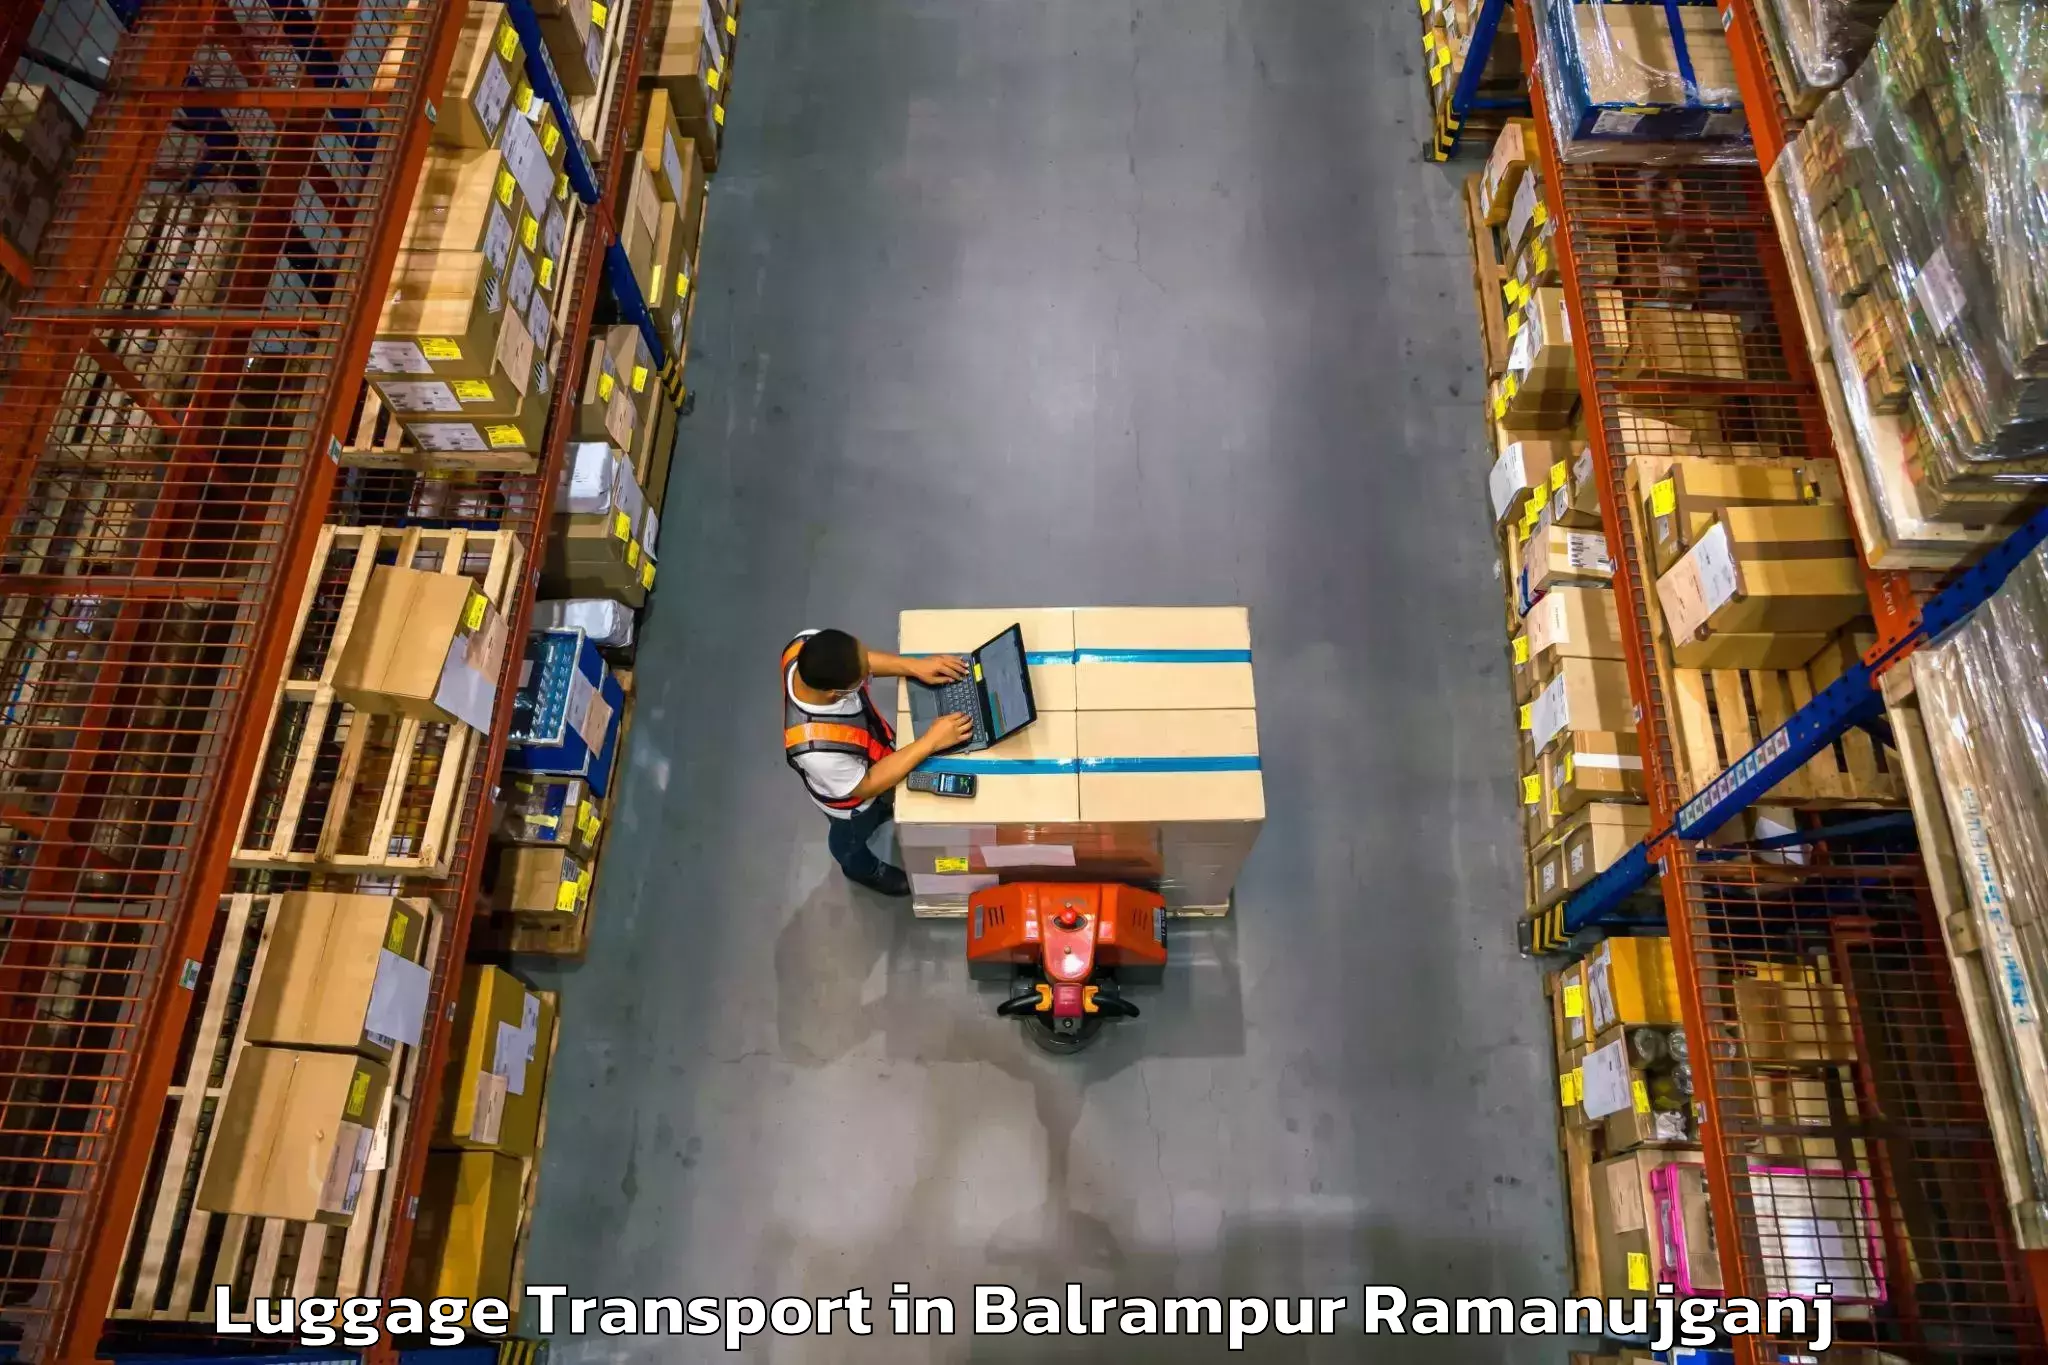 Express baggage shipping in Balrampur Ramanujganj